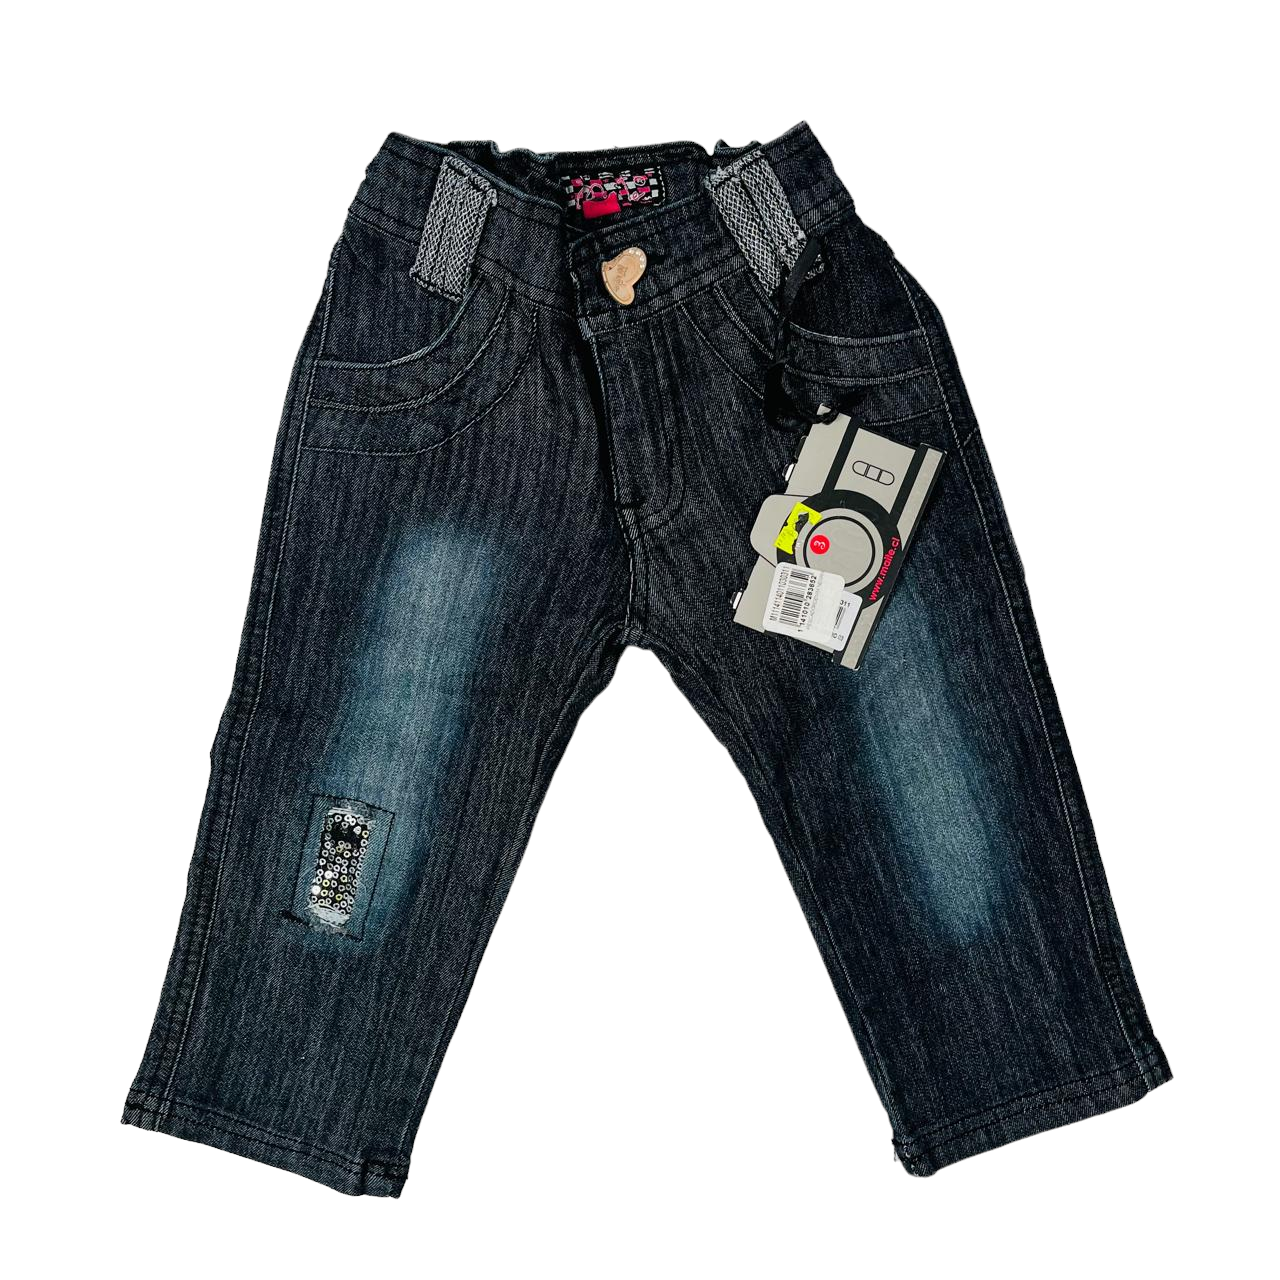 Jeans mezclilla diseño con lentejuelas nuevo con etiqueta